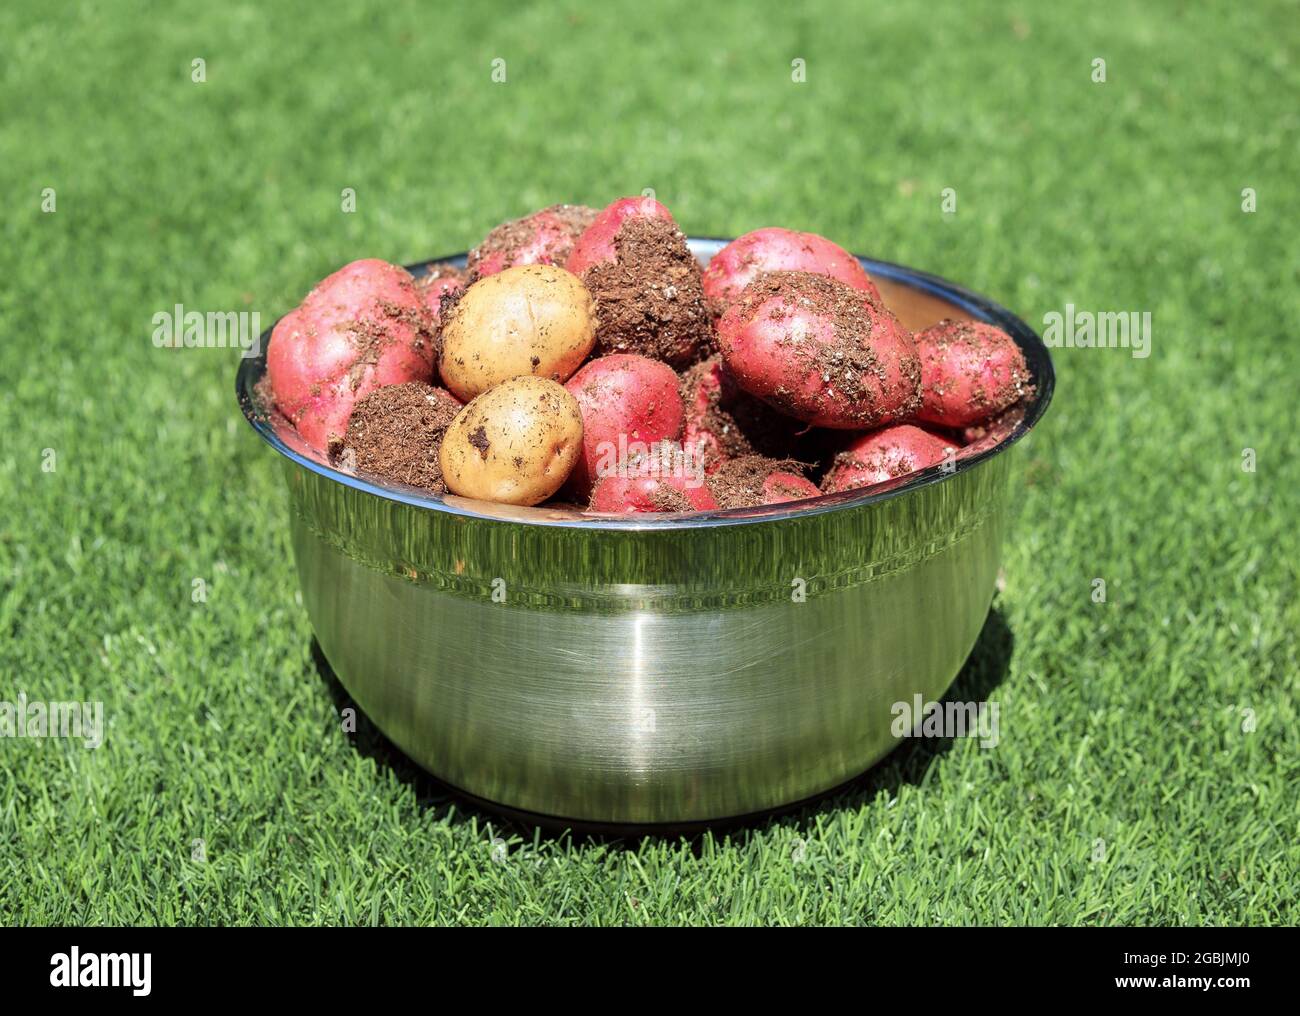 Frisch gepflückte neue Kartoffeln in einer großen Schüssel, die gerade geerntet wurde. Edelstahlbehälter mit rohen mittelgroßen roten und gelben Kartoffeln auf künstlichem Hinterhof Stockfoto